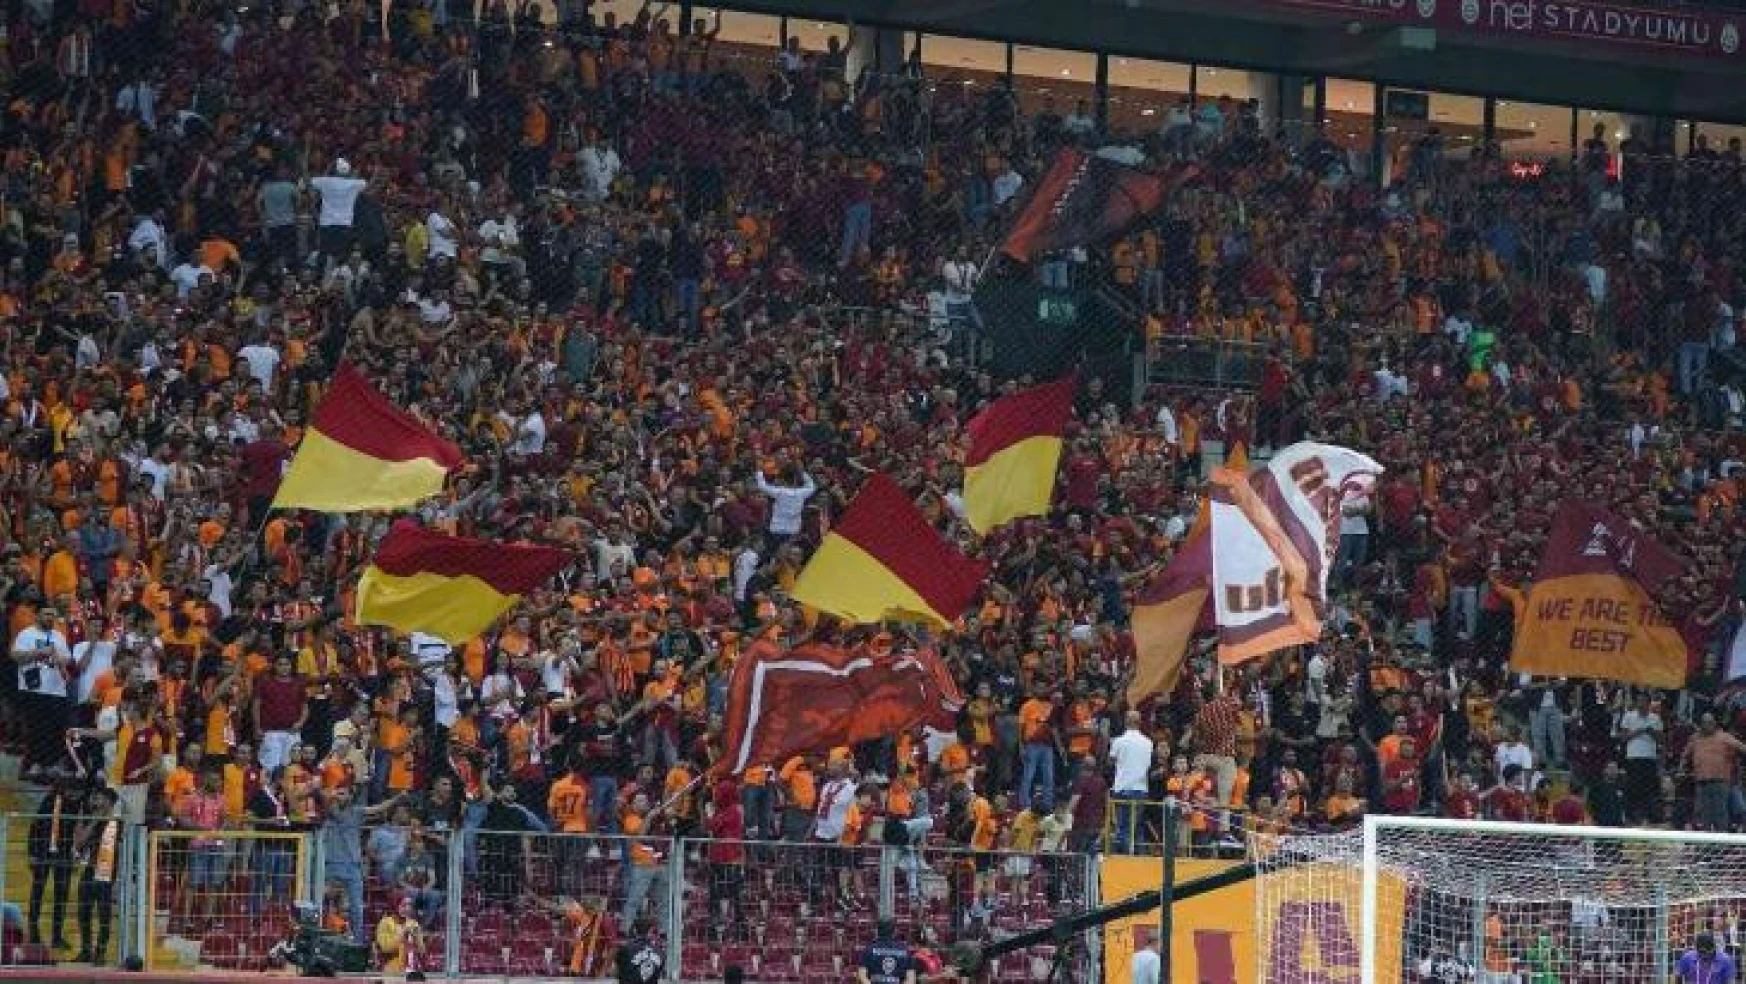 Spor Toto Süper Lig: Galatasaray: 1 - Konyaspor: 1 (Maç devam ediyor)